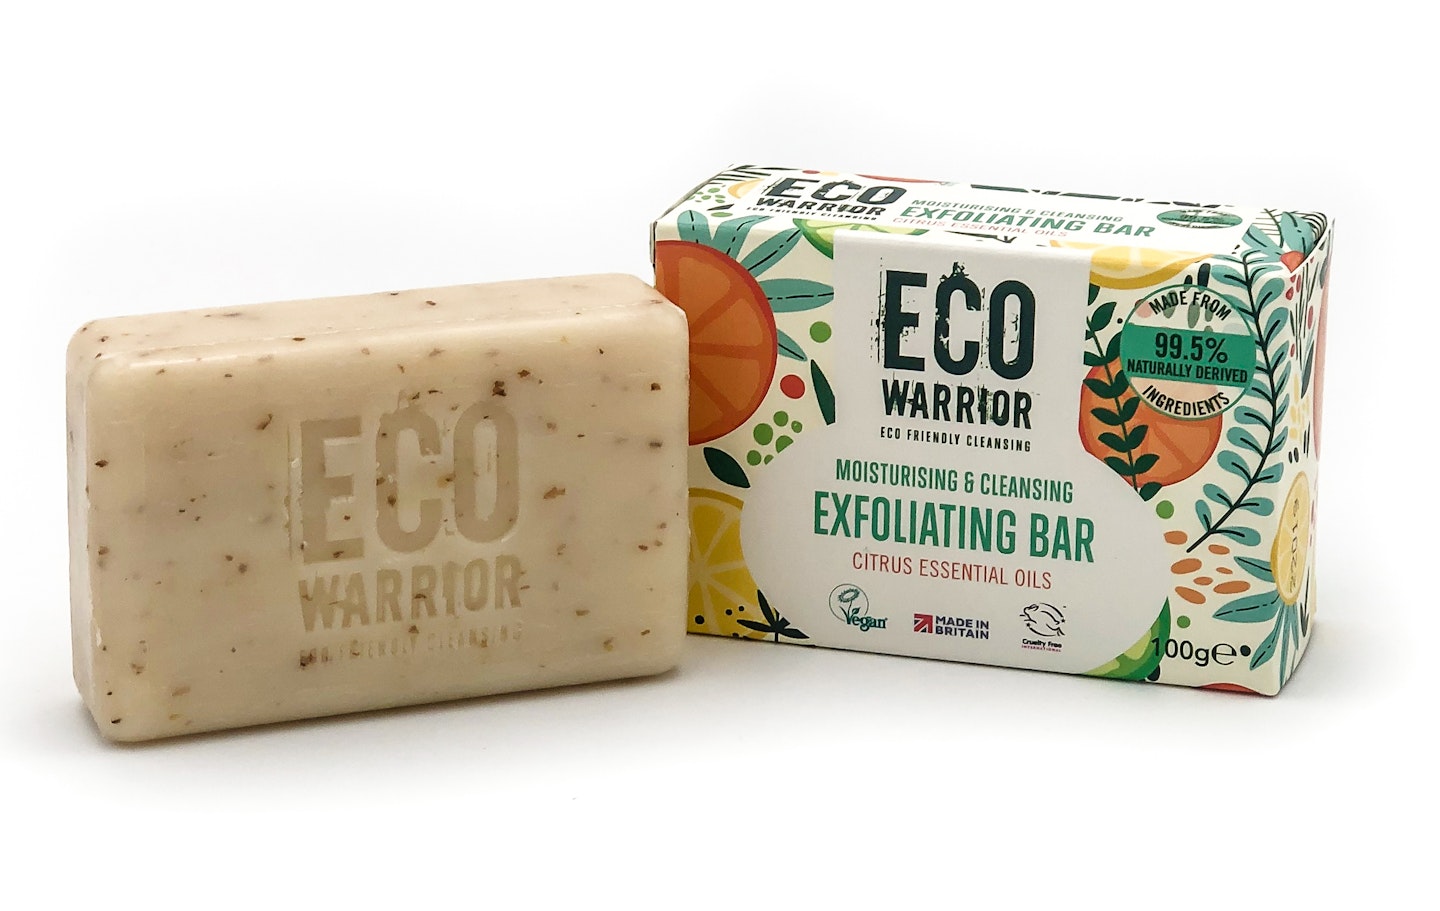 Eco Warrior, Moisturising & Cleansing Exfoliating Bar Citrus Essential Oils, £4.50